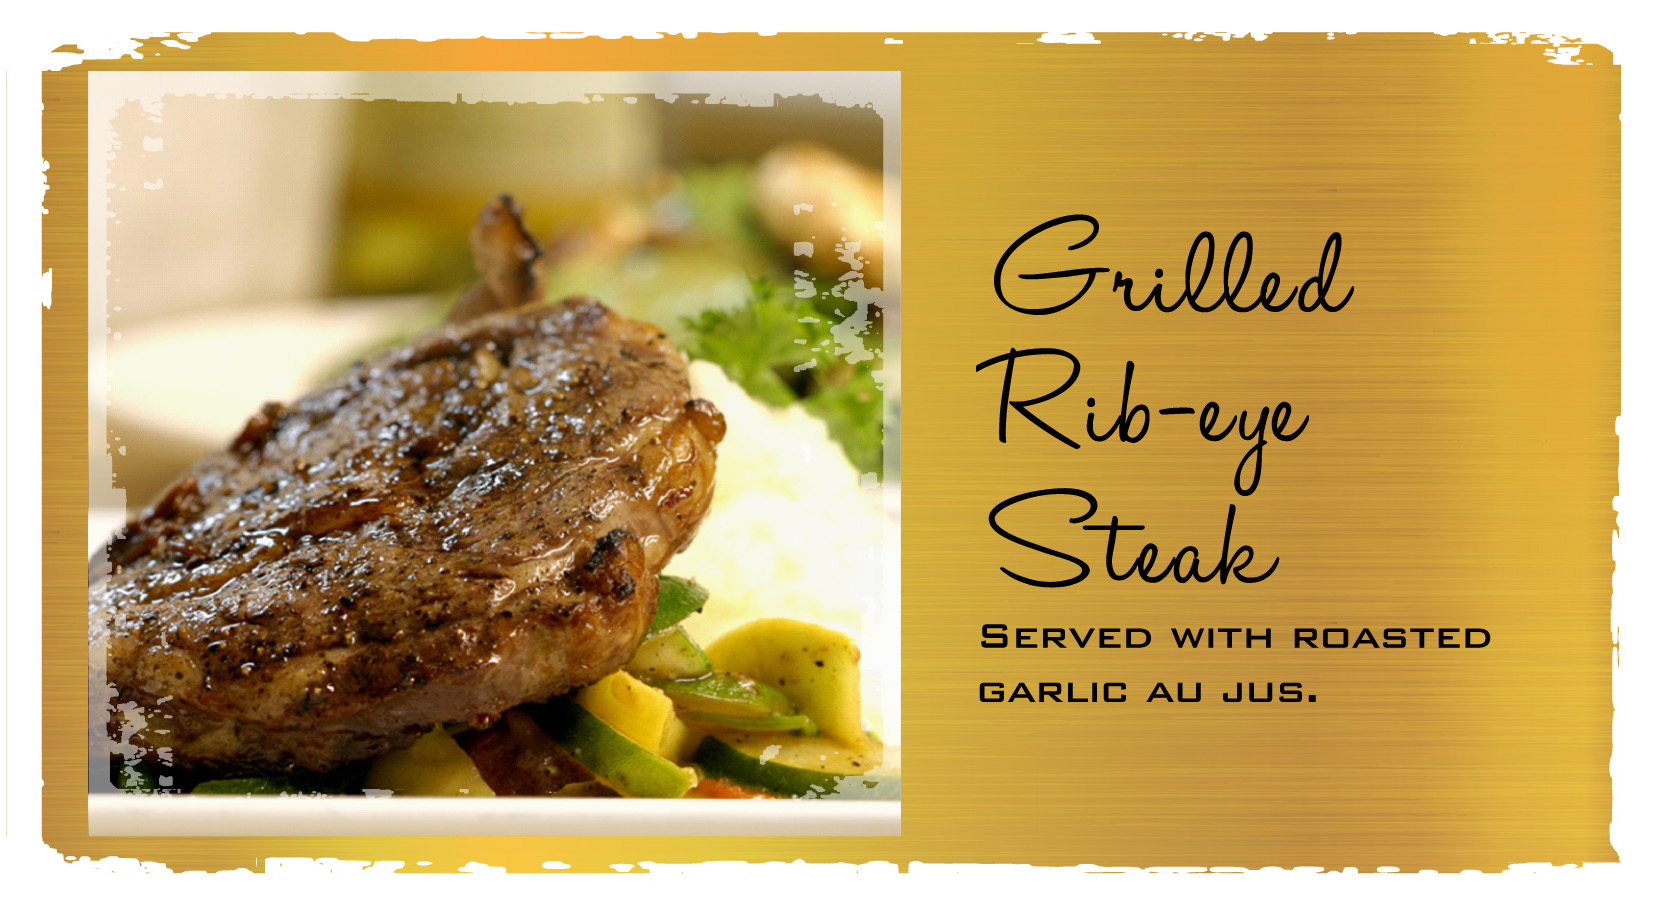 Soriah_Badge6-Grilled Rib-eye Steak_v1.jpg